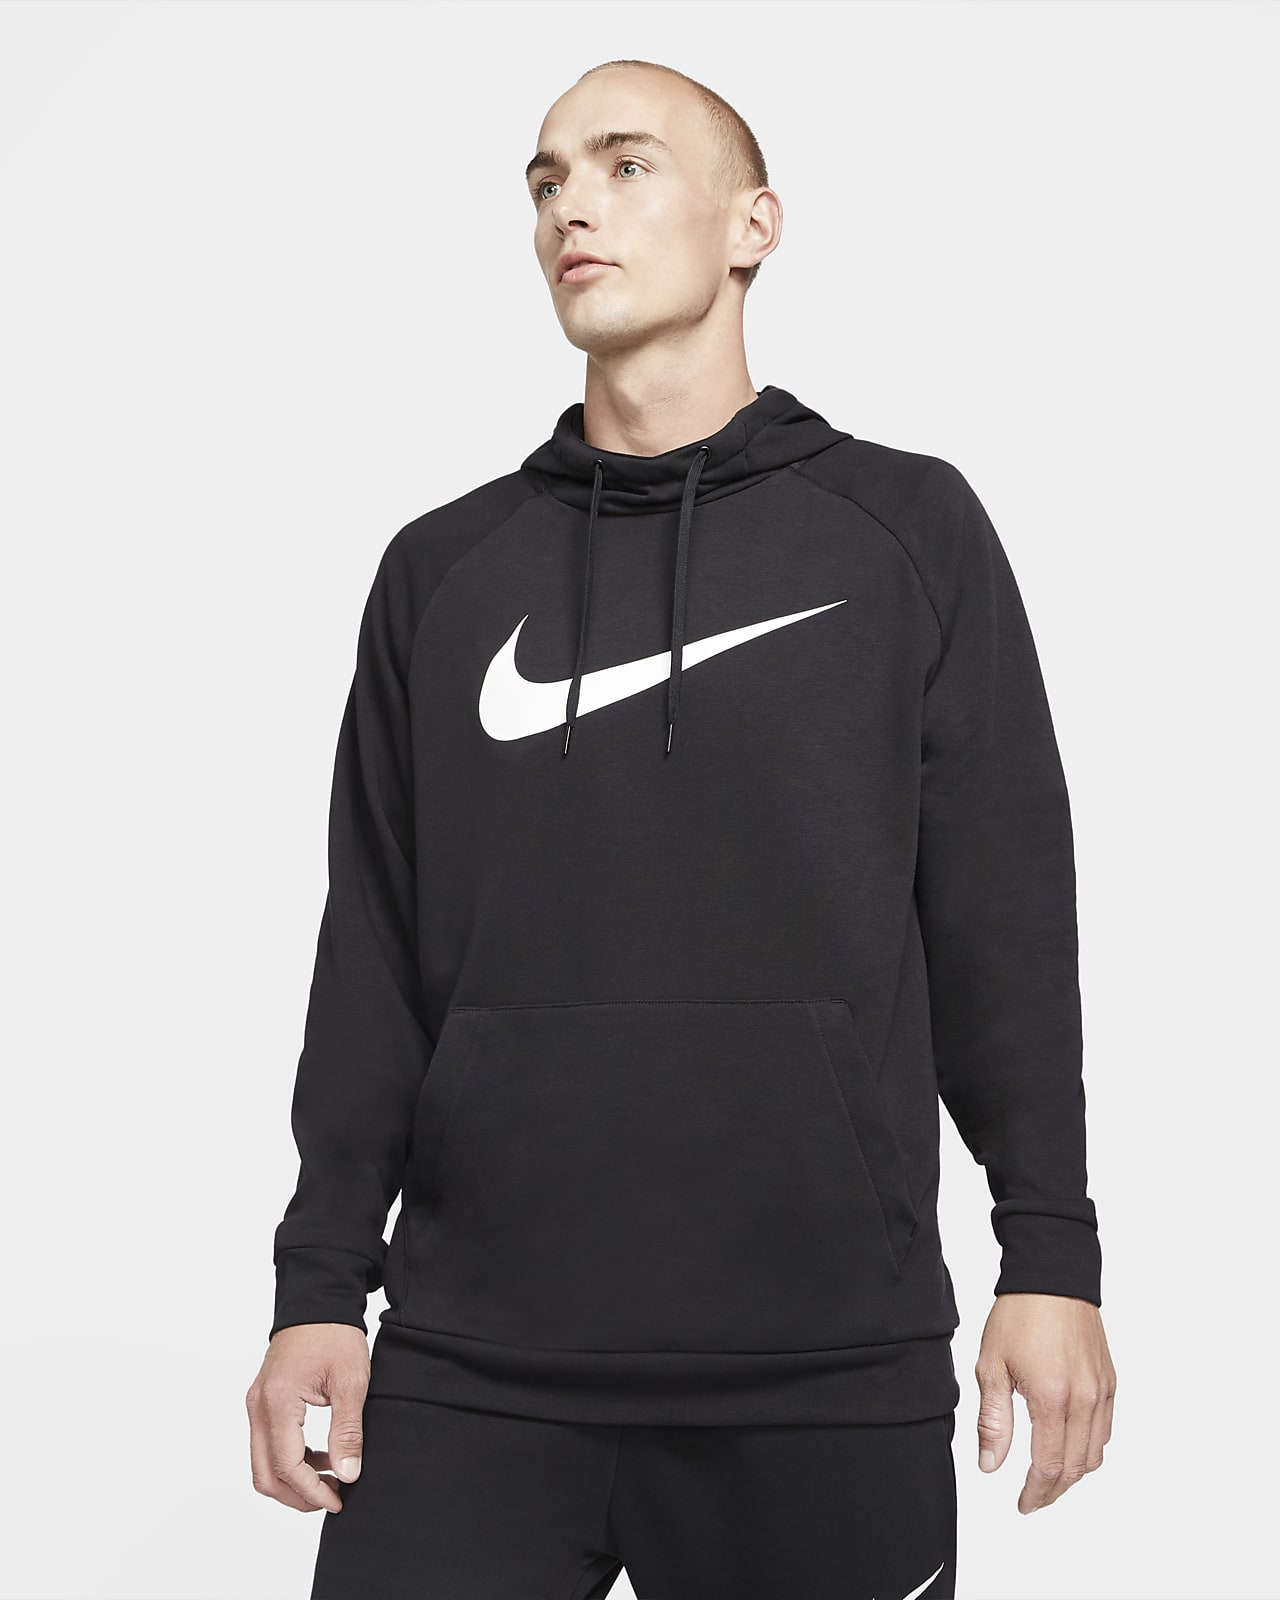 Męska bluza z kapturem i nadrukiem do fitnessu Nike Dry Graphic